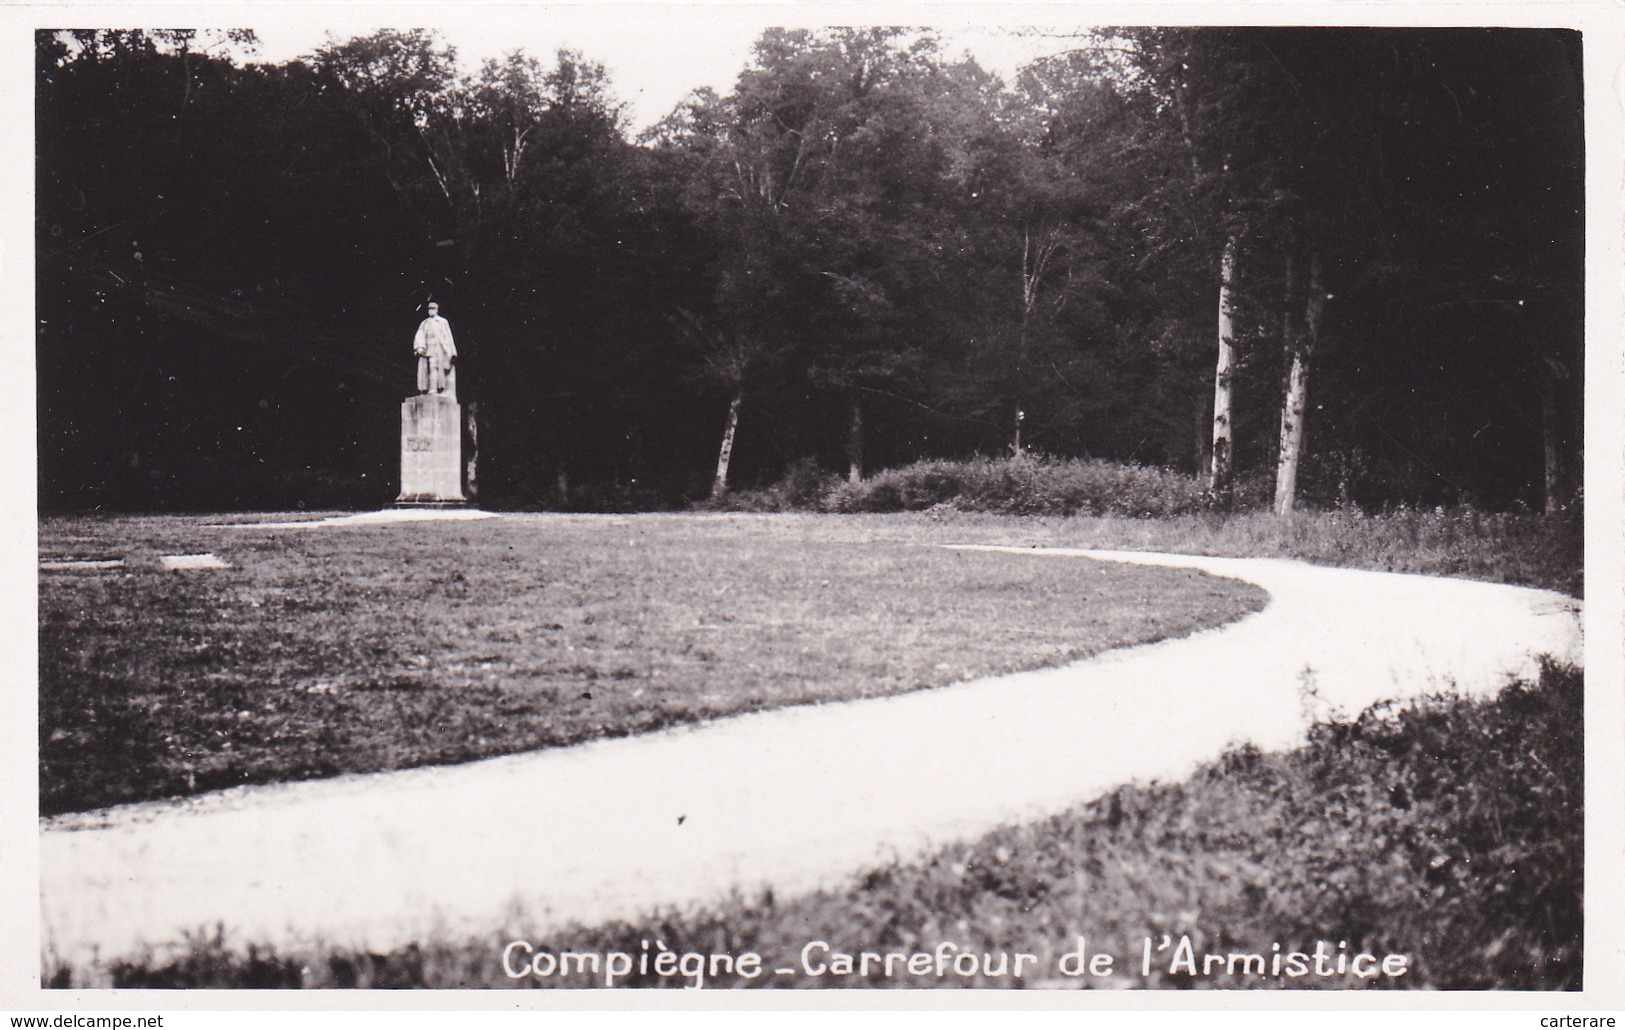 CARTE PHOTO,OISE,COMPIEGNE,FORET DOMANIALE,RETHONDES,LIEU DE SIGNATURE DE L'ARMISTICE,11 Nov 1918,60 - Monumentos A Los Caídos